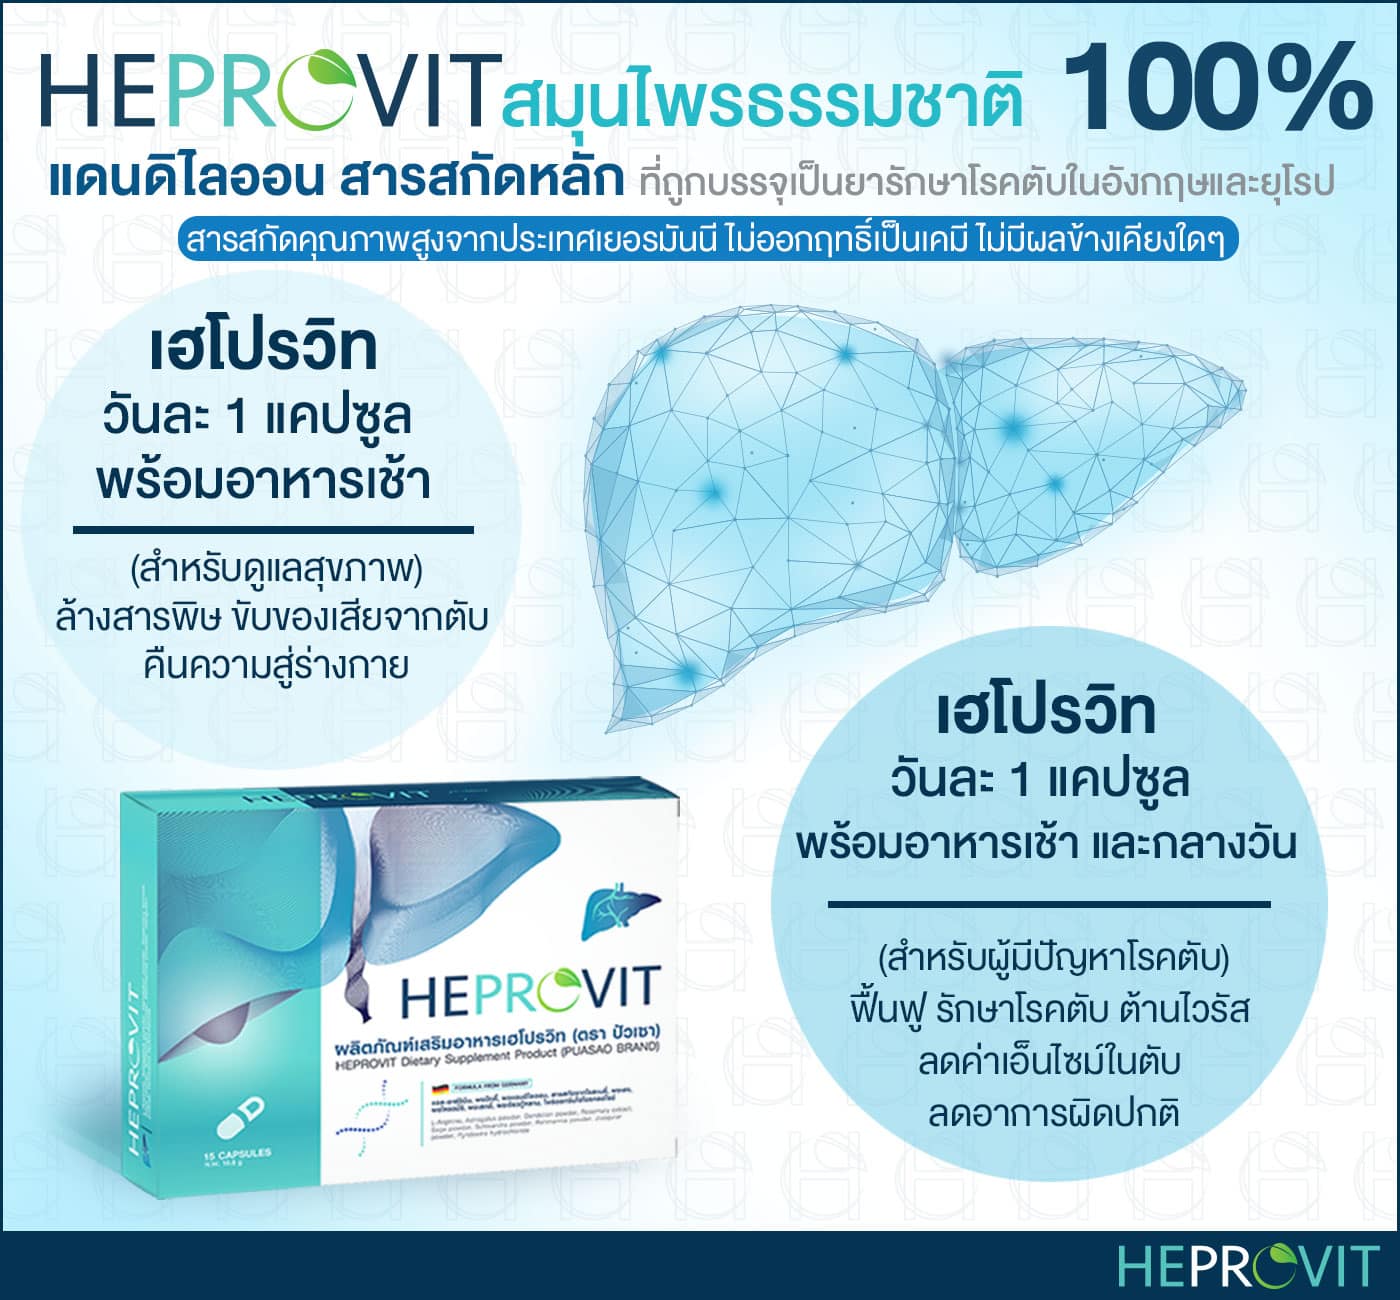 HEPROVIT เฮโปรวิท ฟื้นฟูตับ บำรุงตับ รักษาตับ ดีท็อกซ์ตับ ล้างสารพิษตับ ไขมันพอกตับ ตับอักเสบ ตับแข็ง ไวรัสตับอักเสบเอ ไวรัสตับอักเสบบี ไวรัสตับอักเสบซี มะเร็งตับ ตาเหลืองตัวเหลือง เจ็บชายโครงด้านขวา ง่วงกลางวัน ตื่นกลางคืน ดื่มแล้วเป็นผื่นแดง คันตามตัวไม่มีสาเหตุ มือเท้าบวม ท้องมาน ปวดตามข้อ ท้องอืด แน่น หายใจไม่สะดวก ดื่มเหล้า สุรา อ้วน ไขมัน